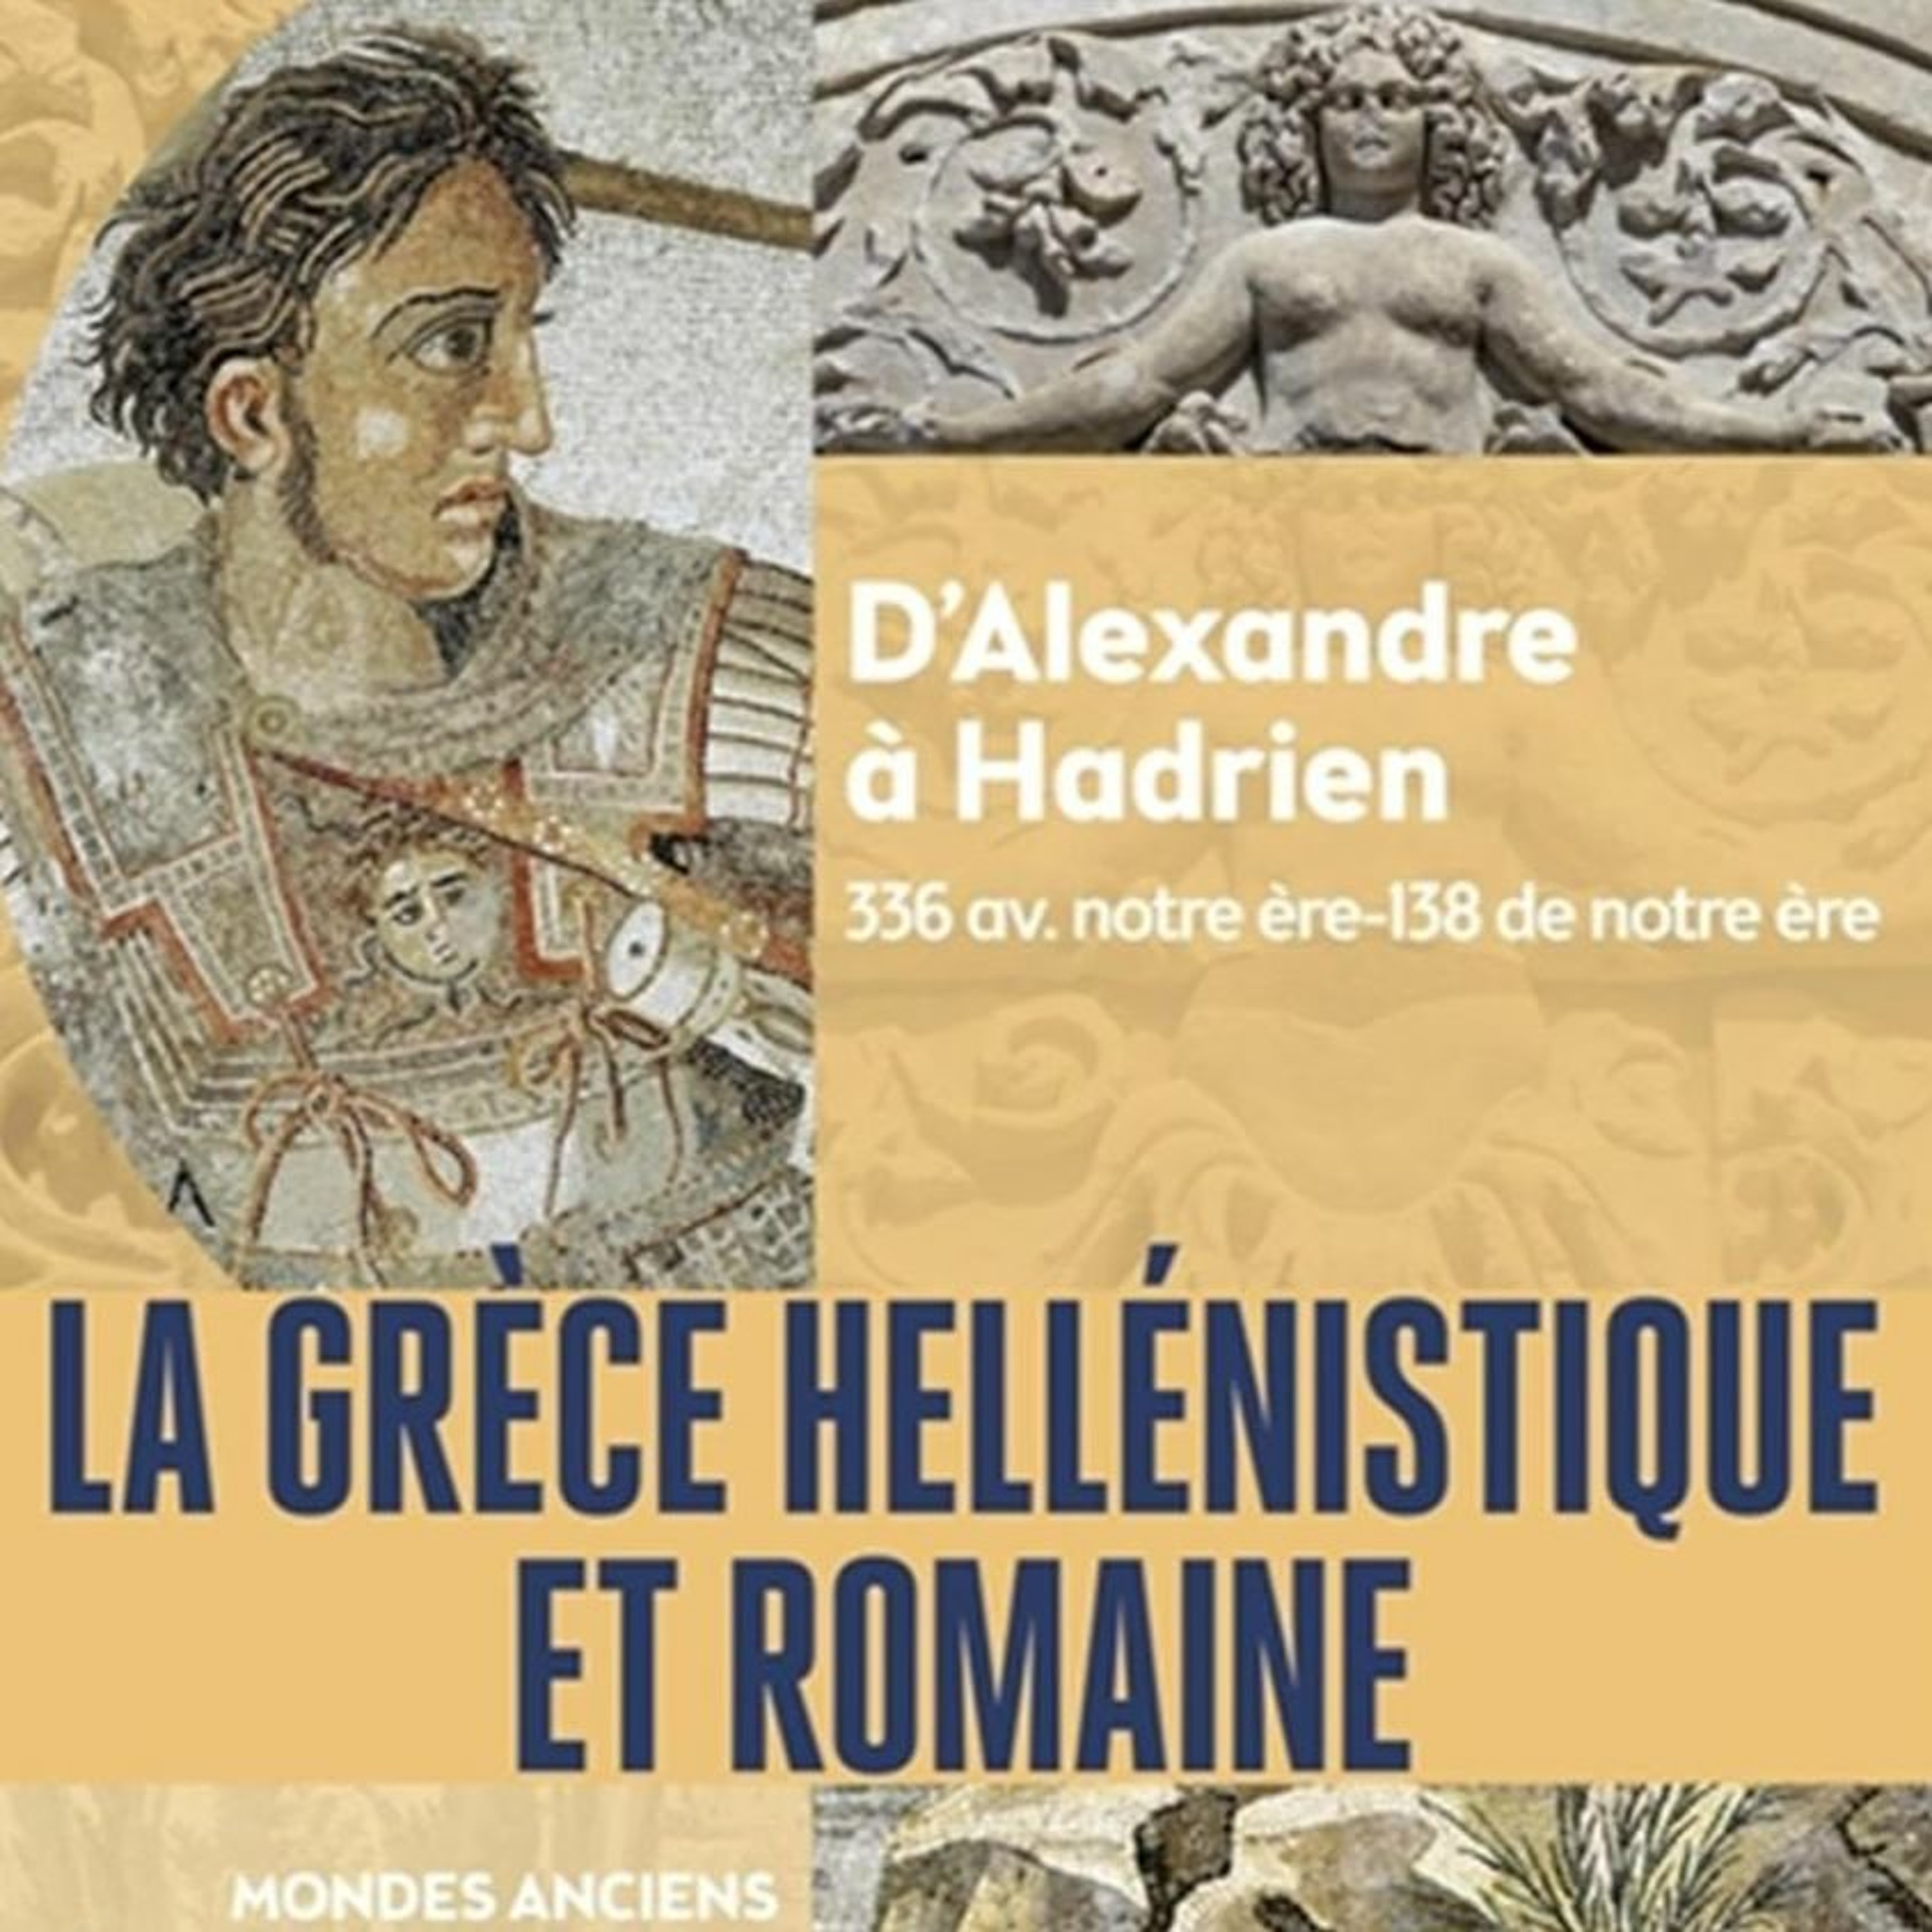 Chemins d’histoire-La Grèce hellénistique et romaine, avec C. Grandjean et C. Chandezon-19.04.24